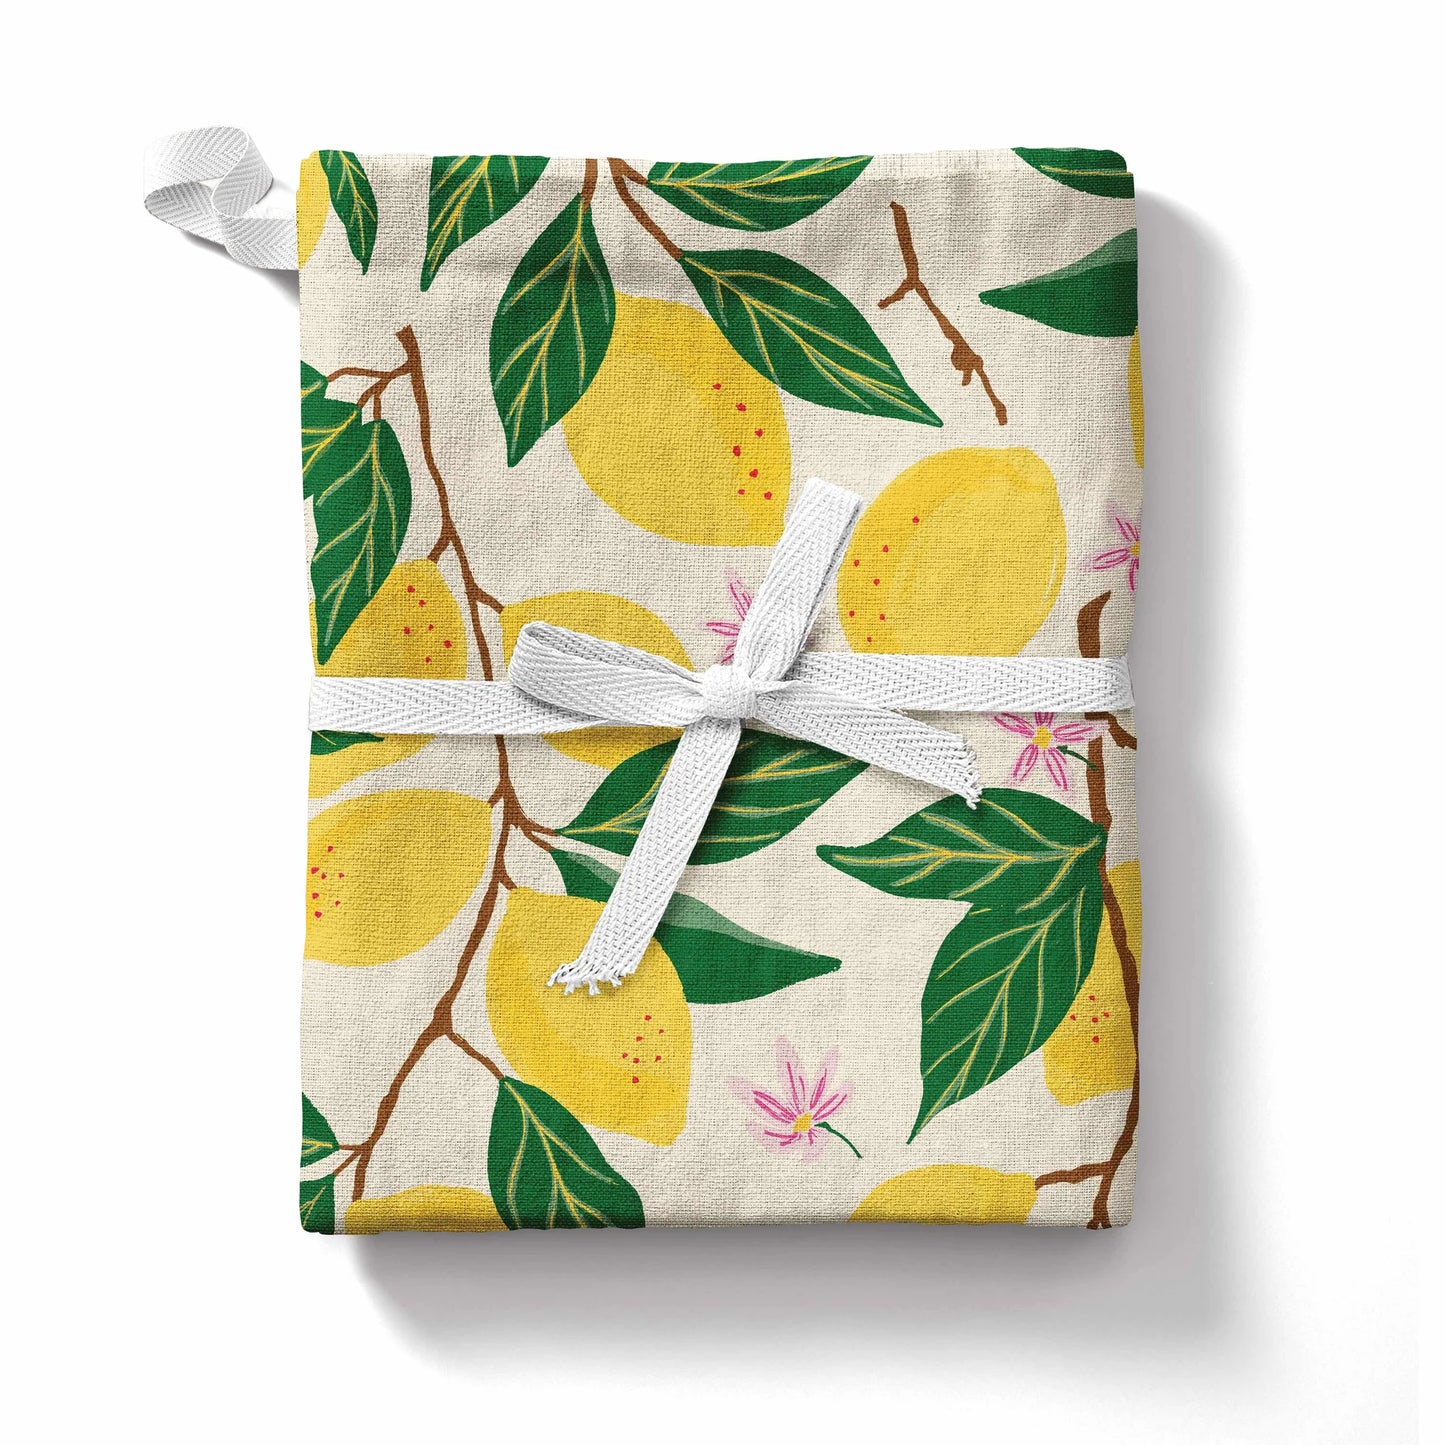 Tea towel in Lemon Grove print 